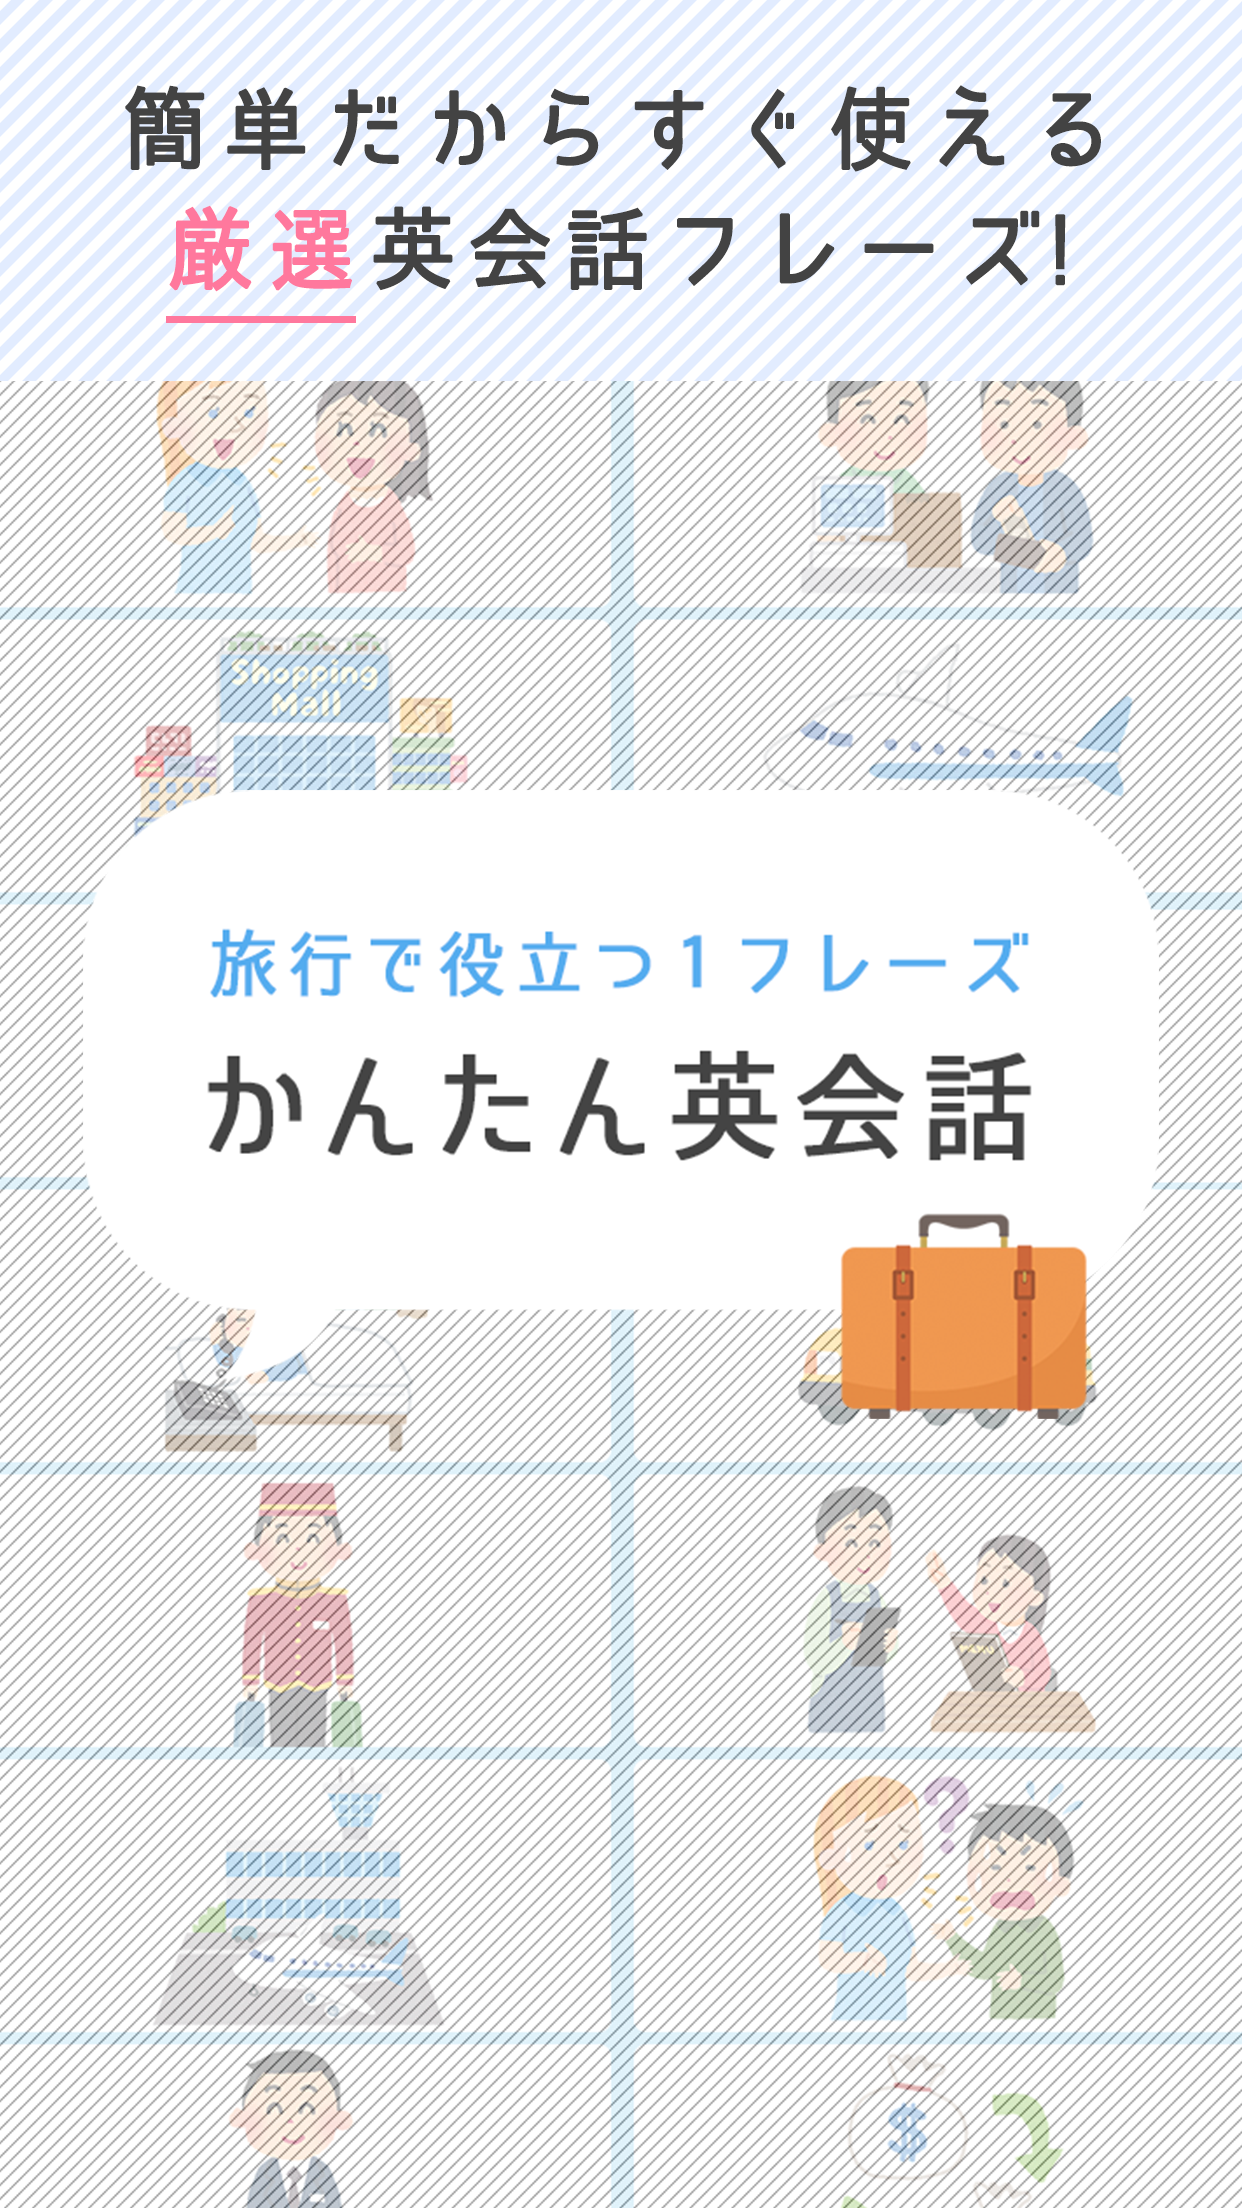 Screenshot 1 of Conversazione in inglese facile -Quiz in inglese facile gratuiti utili per viaggiare all'estero- 1.1.3